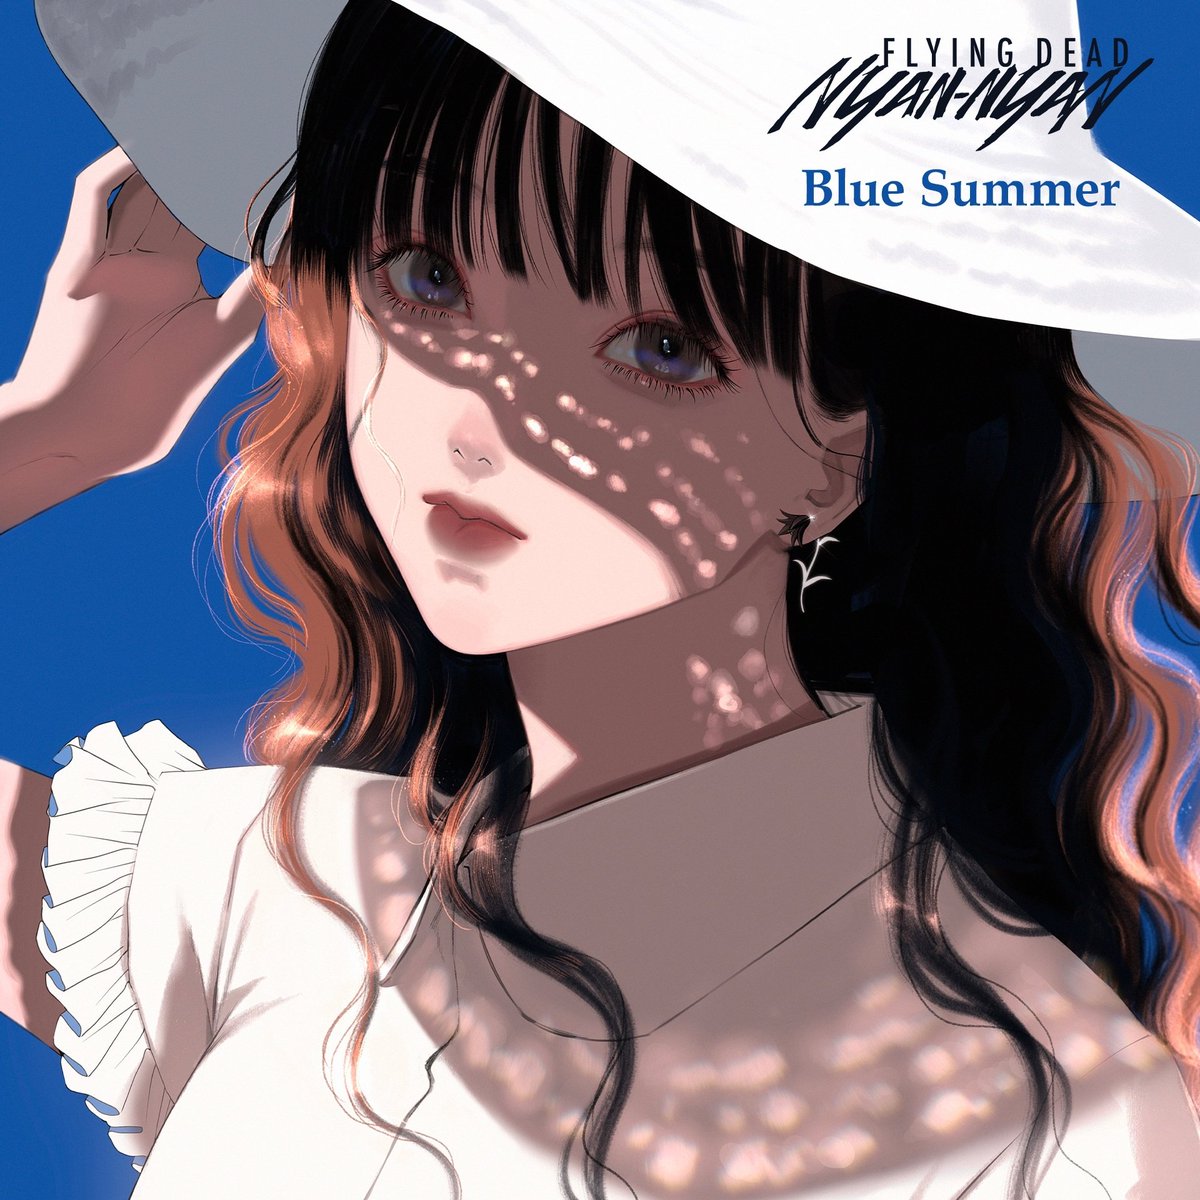 「【告知】FLYING DEAD NYAN-NYAN様の 『Blue Summer」|細川成美のイラスト